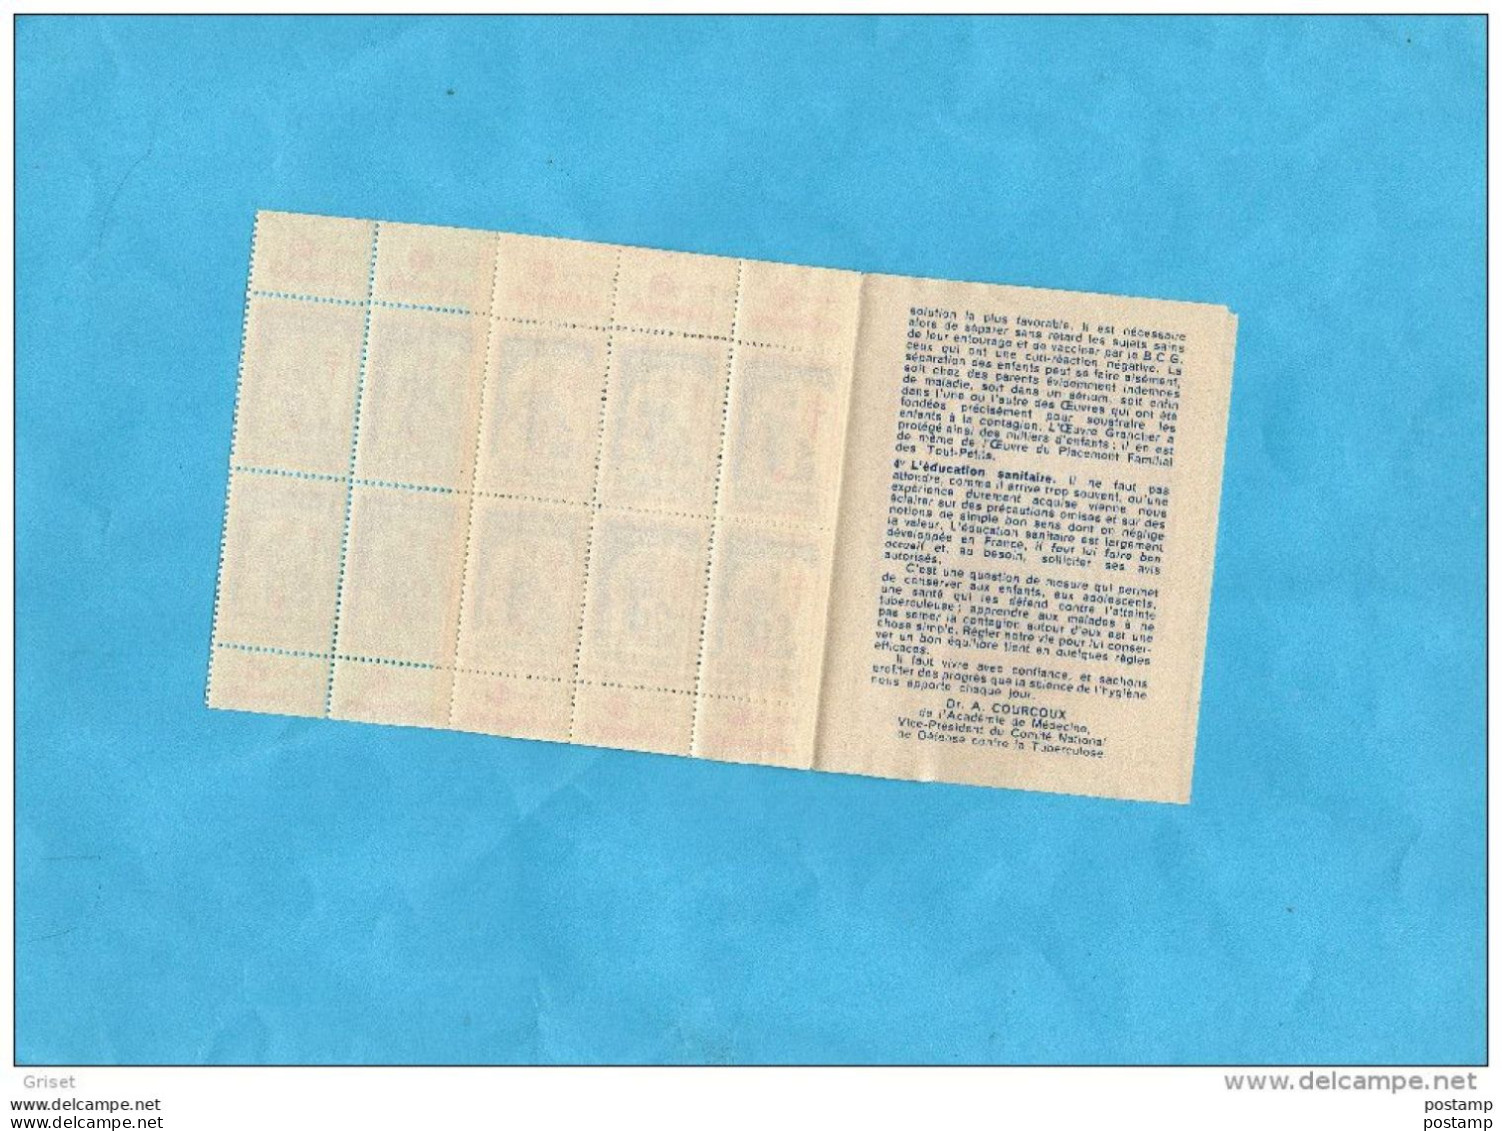 Carnet Comité National  Contre La Tuberculose-1955 Complet -bel état Vignettes Gomme Brillante - Blokken & Postzegelboekjes